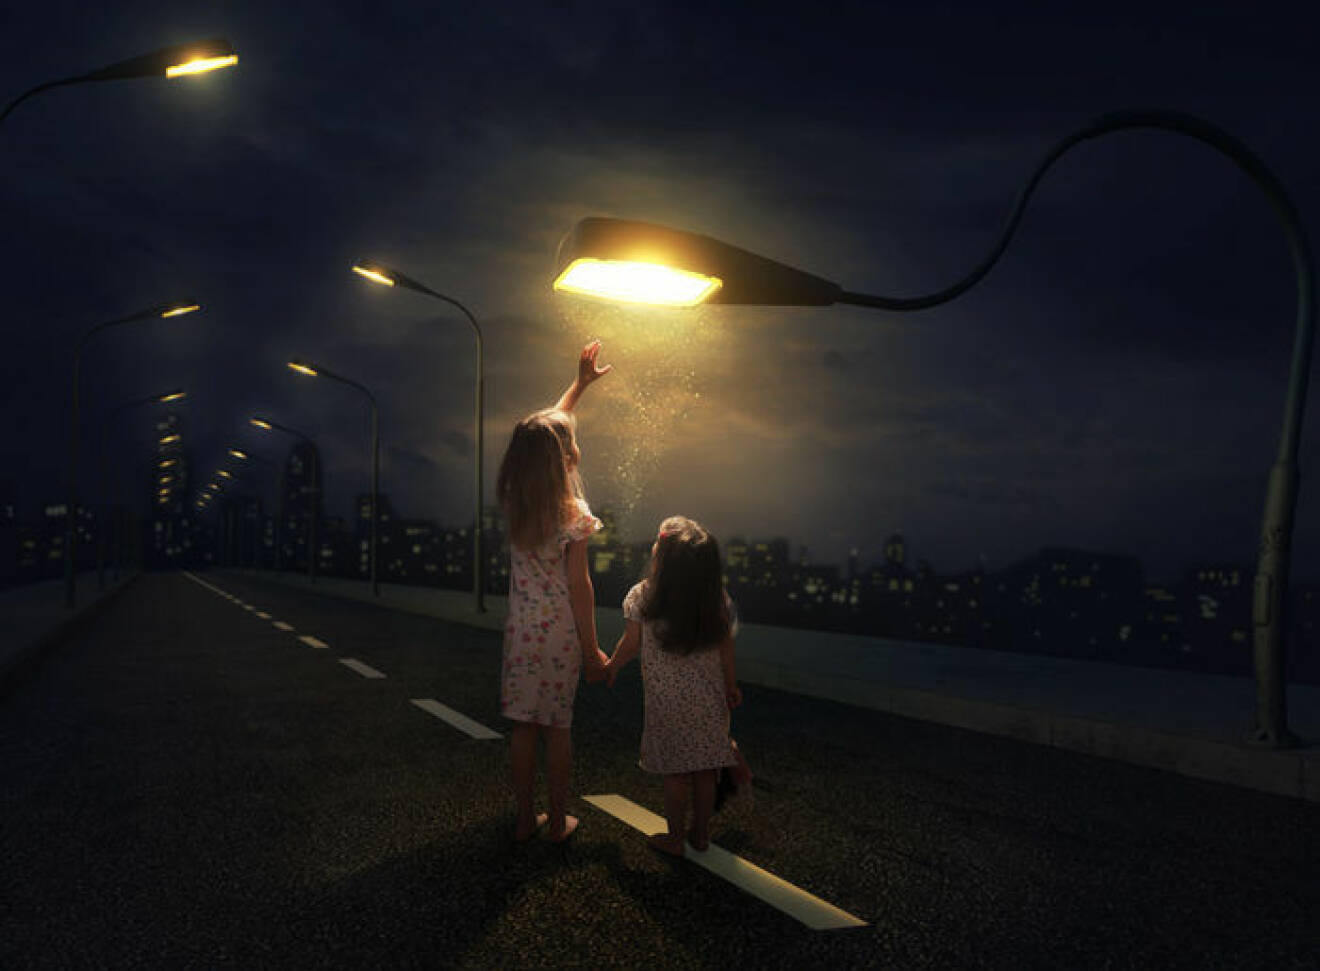 Fyrabarnspappans skapar magiska bilder med photoshop